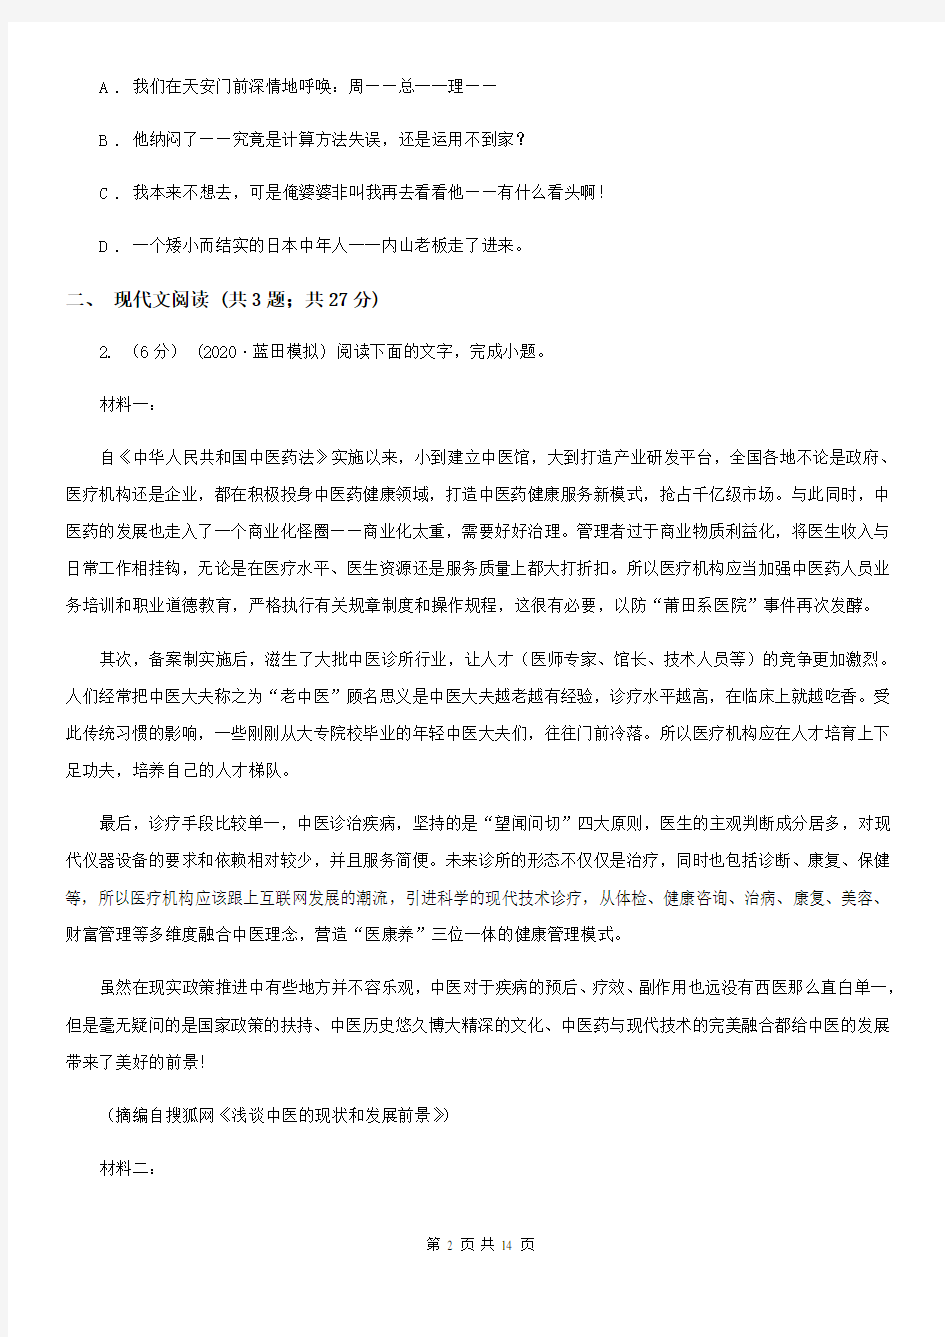 上海市高三语文高考适应性考试(一)